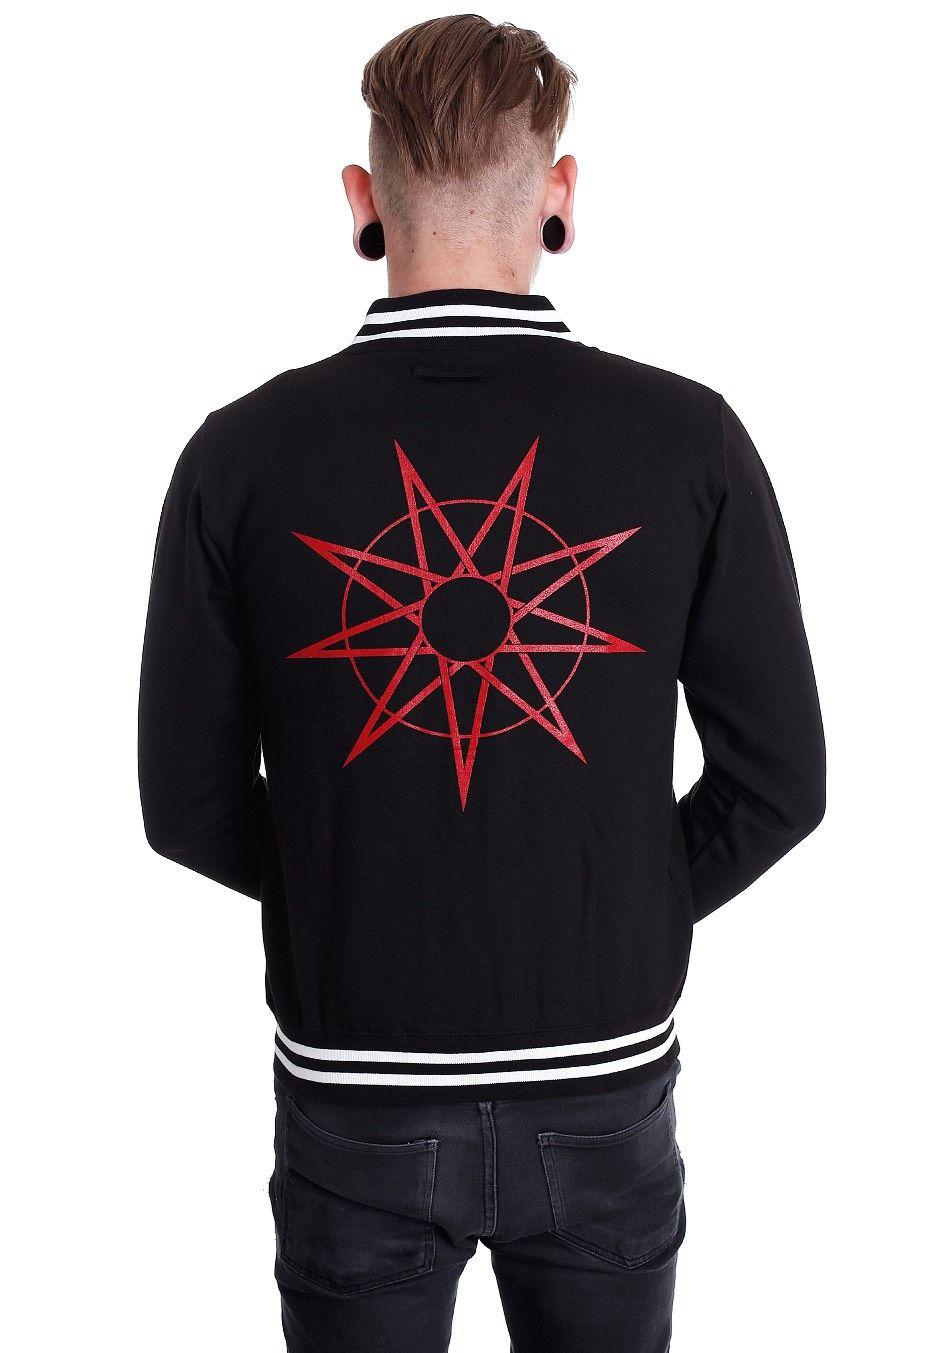 Slipknot Logo - Slipknot - Logo & 9 Point Star - College Jacket - Official Metal ...